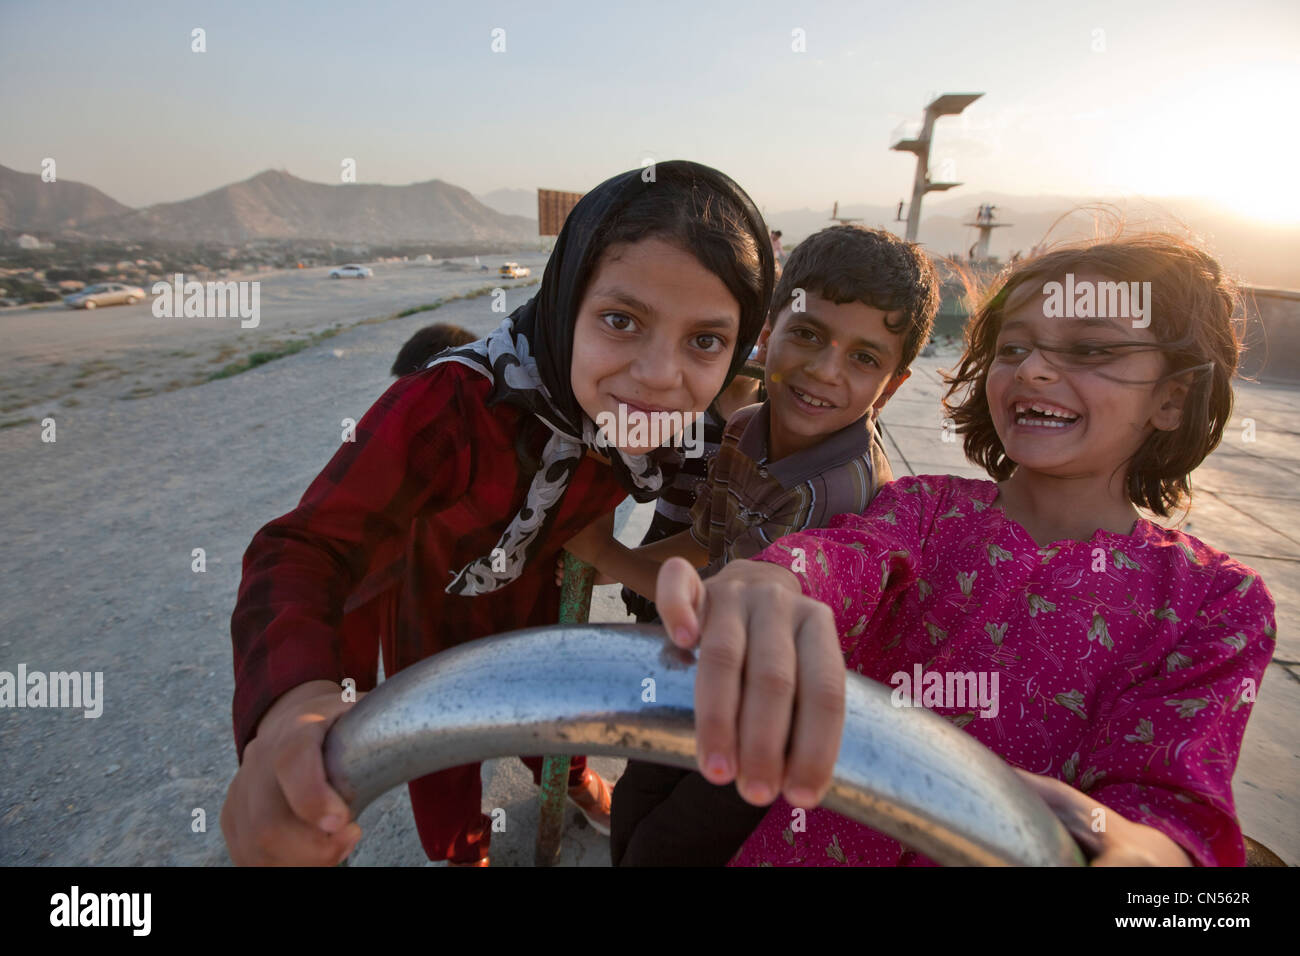 L'Afghanistan, Kaboul, Bibi Maru Hill, les jeunes filles qui jouent dans une piscine abandonnée Banque D'Images